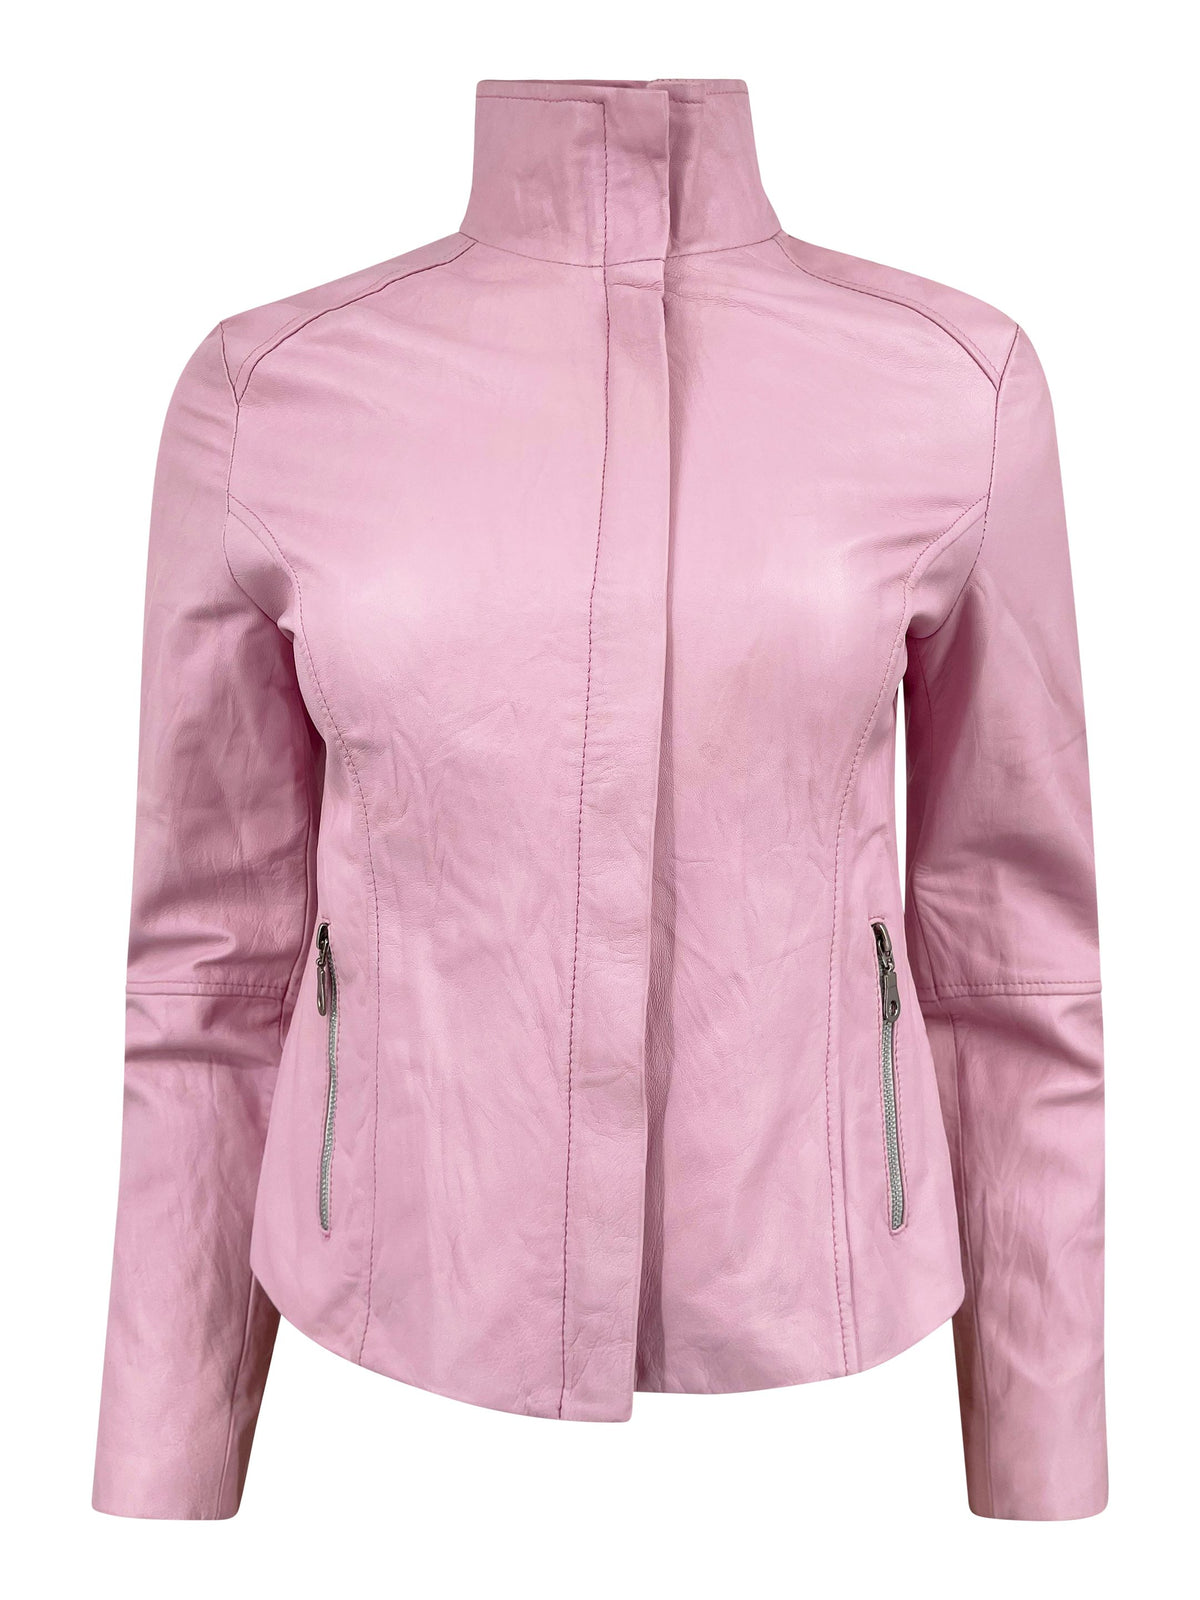 Vintage Pink Leather Jacket - ONFEMME By Lindsey's Kloset